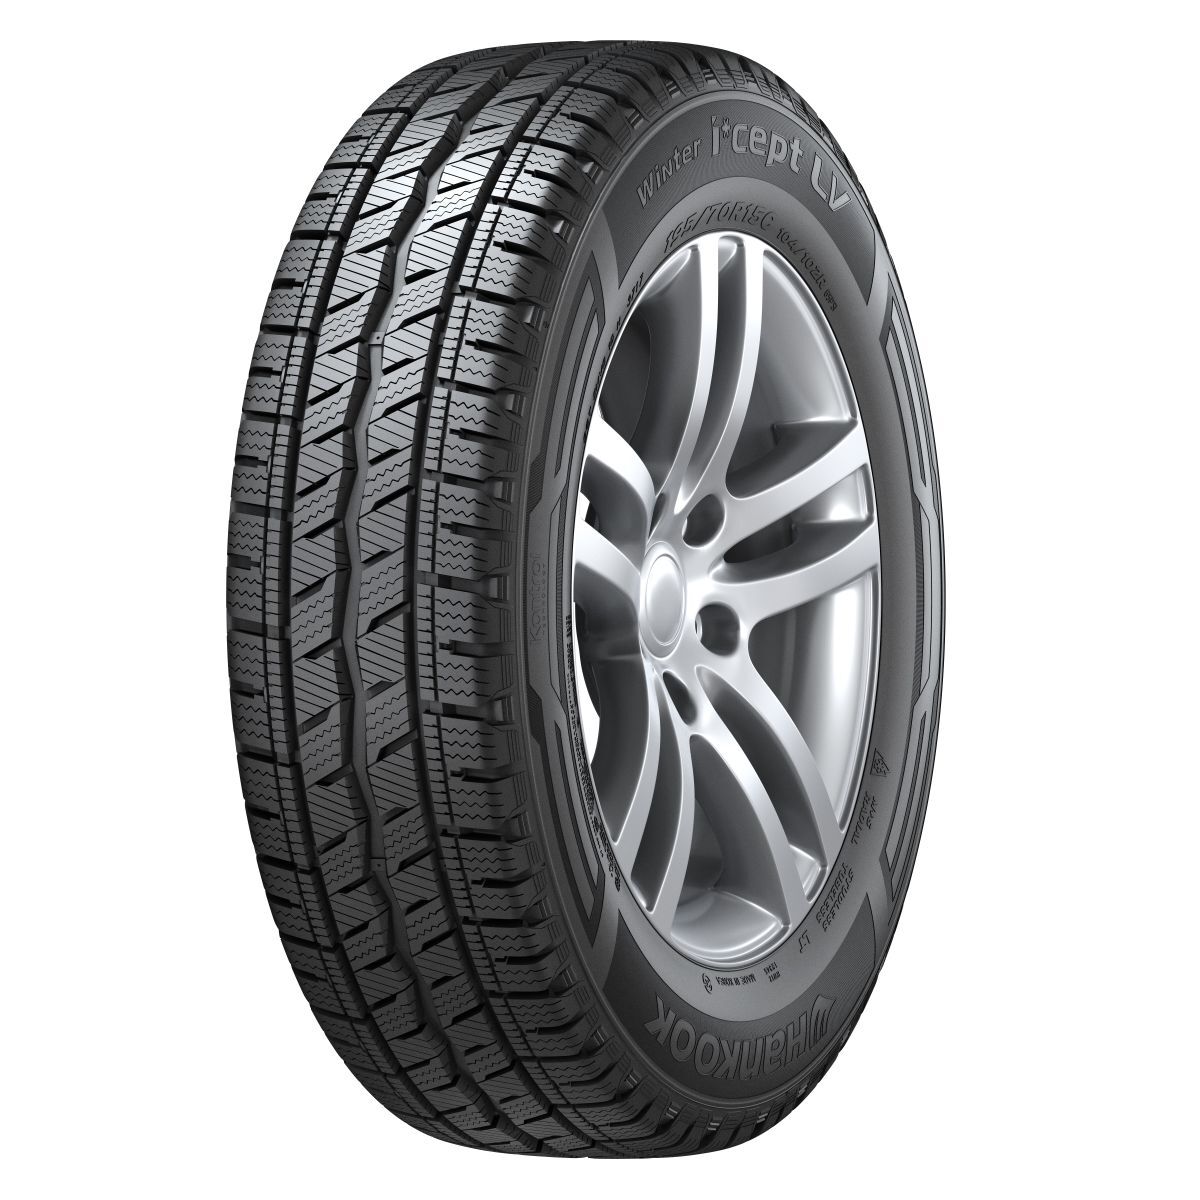 Neumáticos de invierno HANKOOK Winter I*cept LV RW12 215/65R16C, 109/107T TL